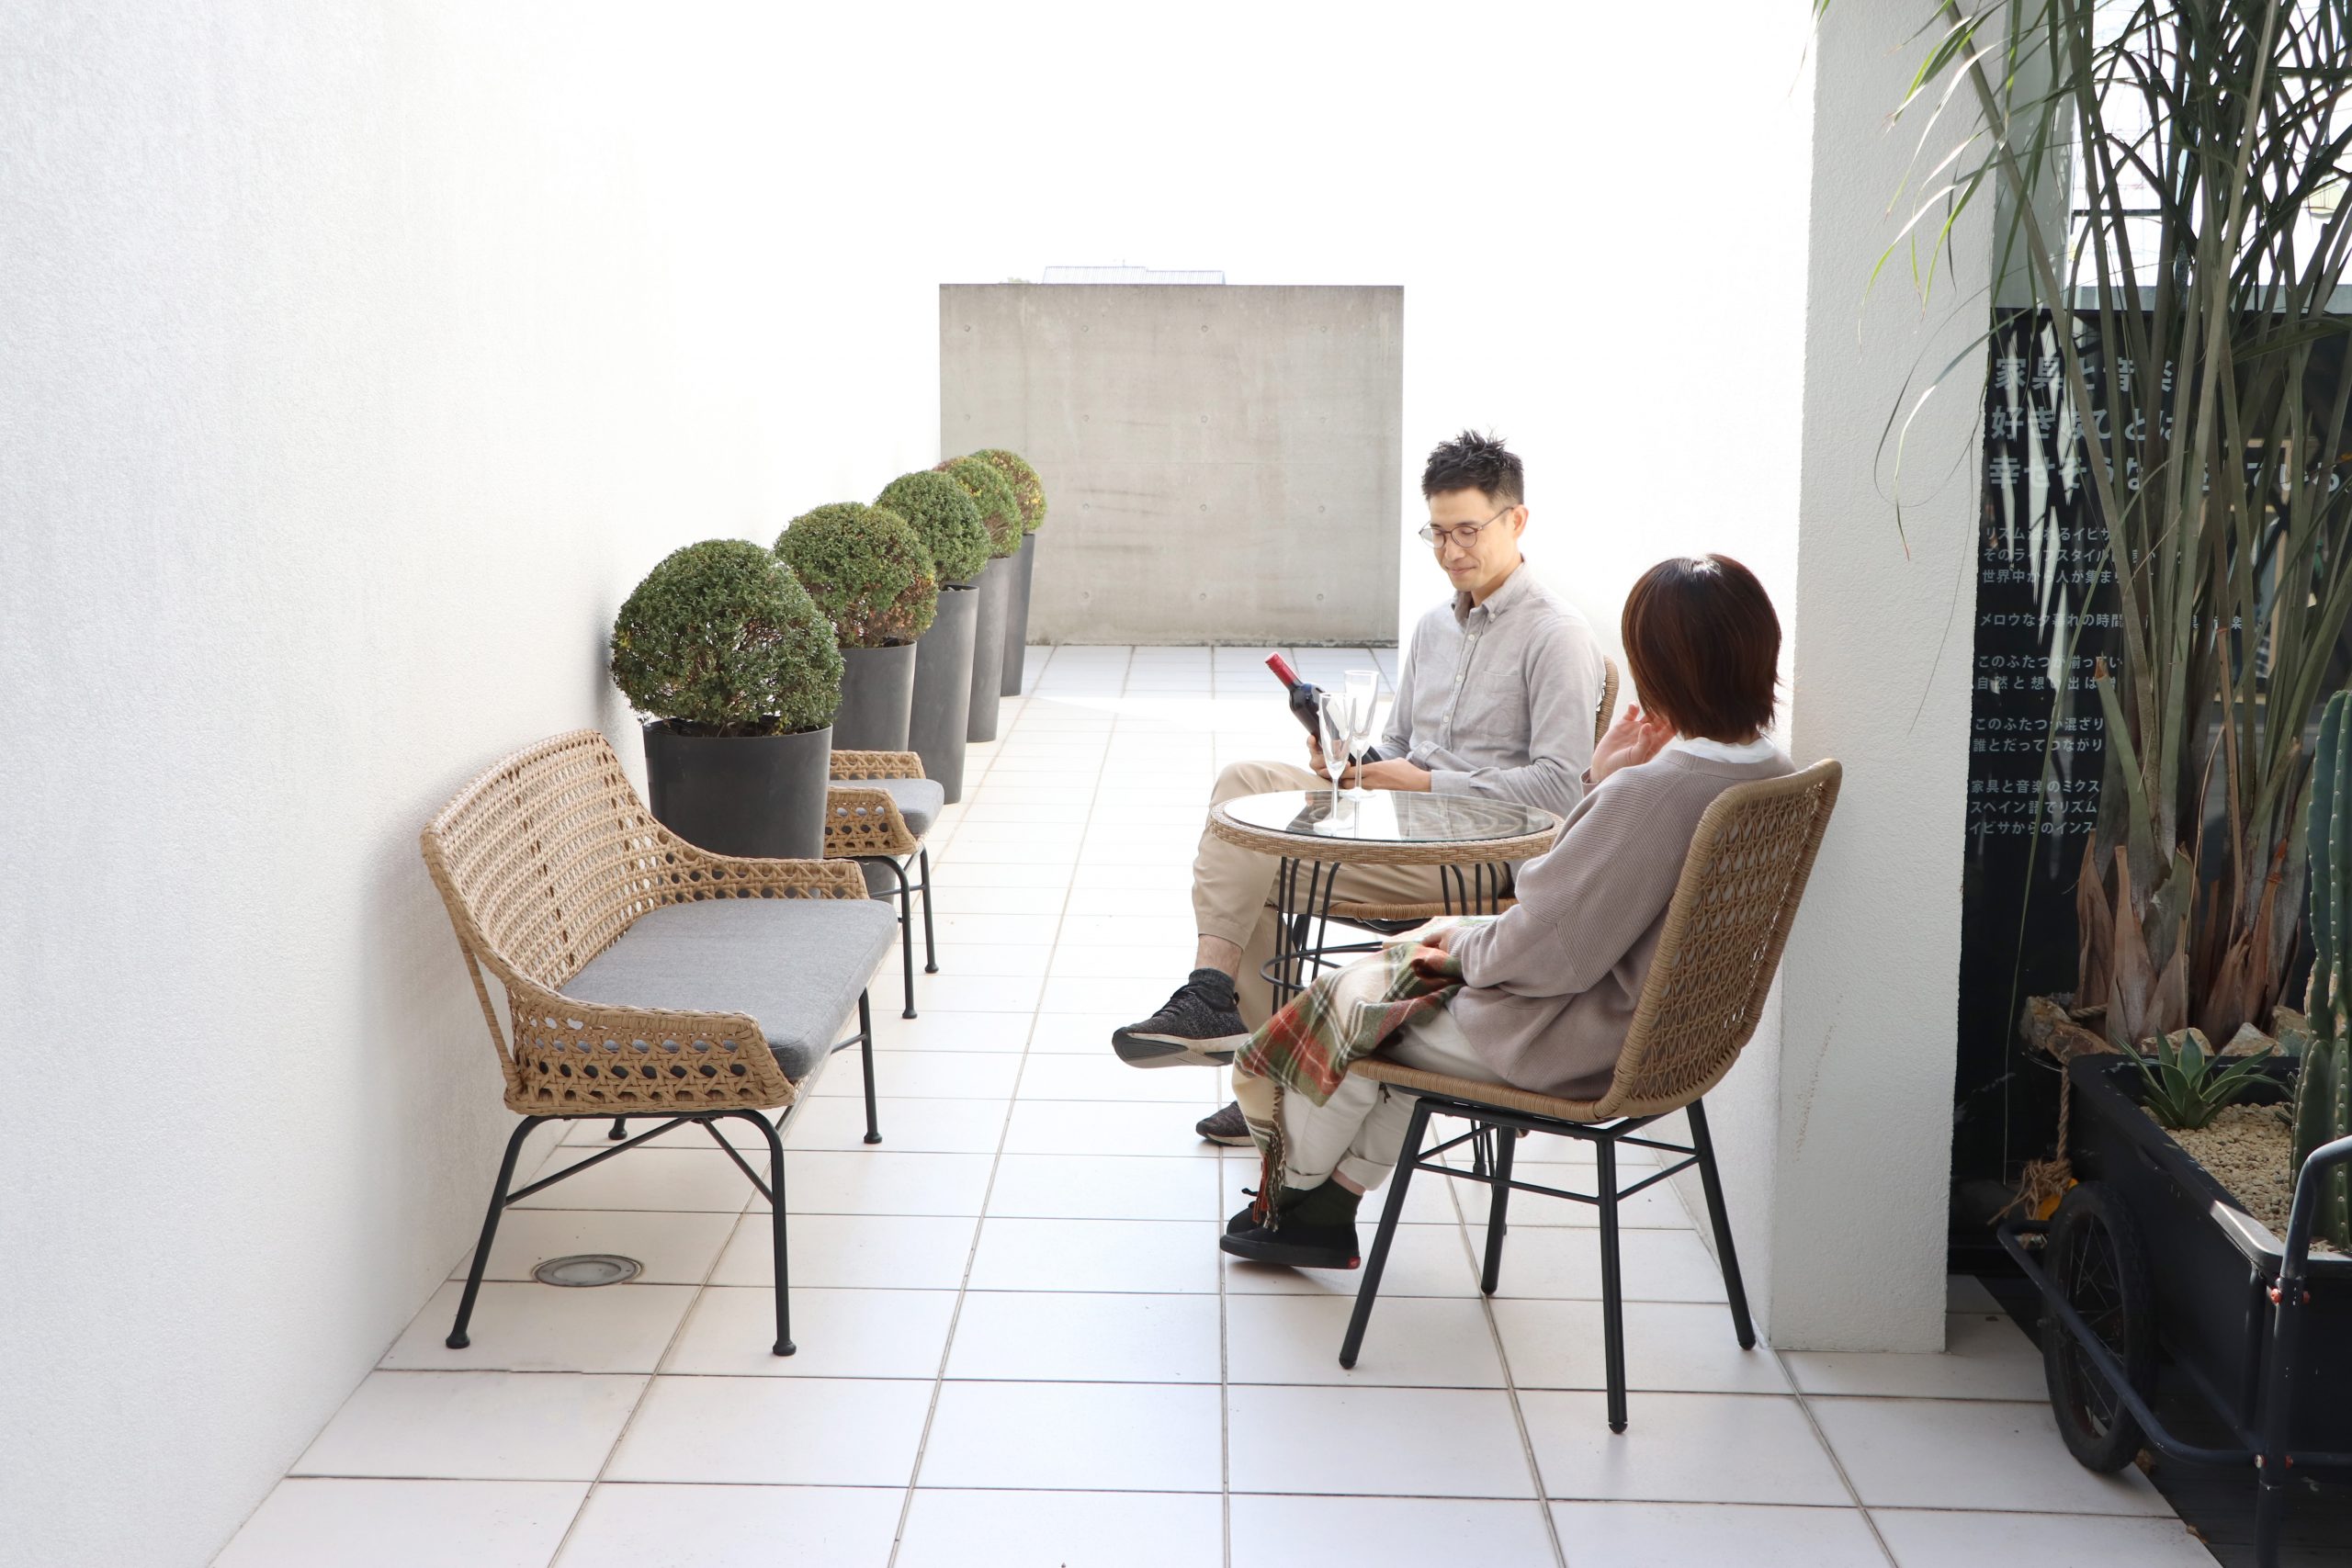 ガーデンチェア ゆったりとくつろげる 夢のガーデンファニチャー Resonaire リゾネア オーバルチェア 人工ラタン 庭 屋外 カフェ風 おしゃれ 椅子